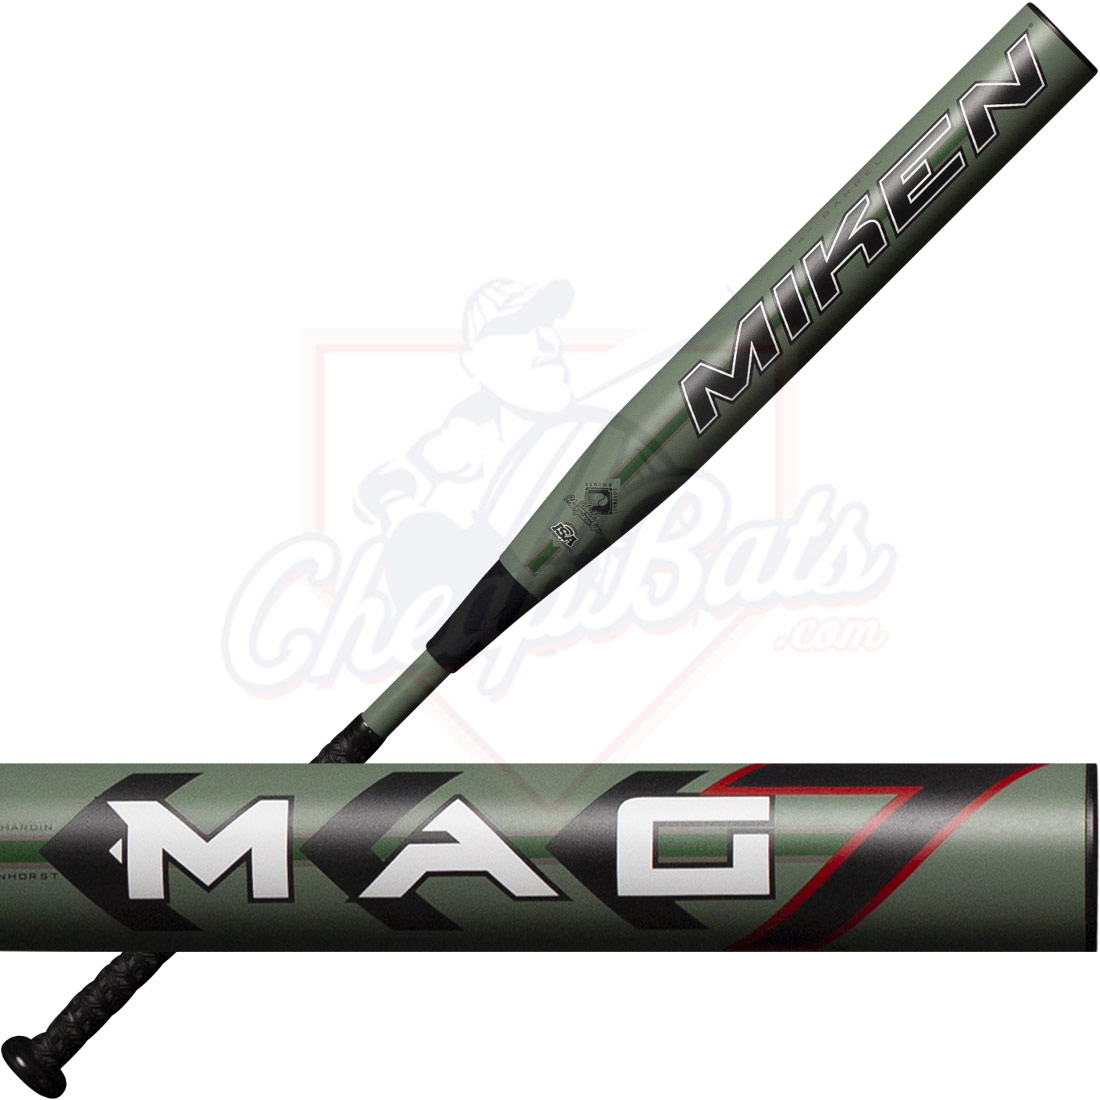 Miken 2020 MAG7 14 Maxload Senior Slow Pitch Softball Bat MMAG7S MMAG7S 